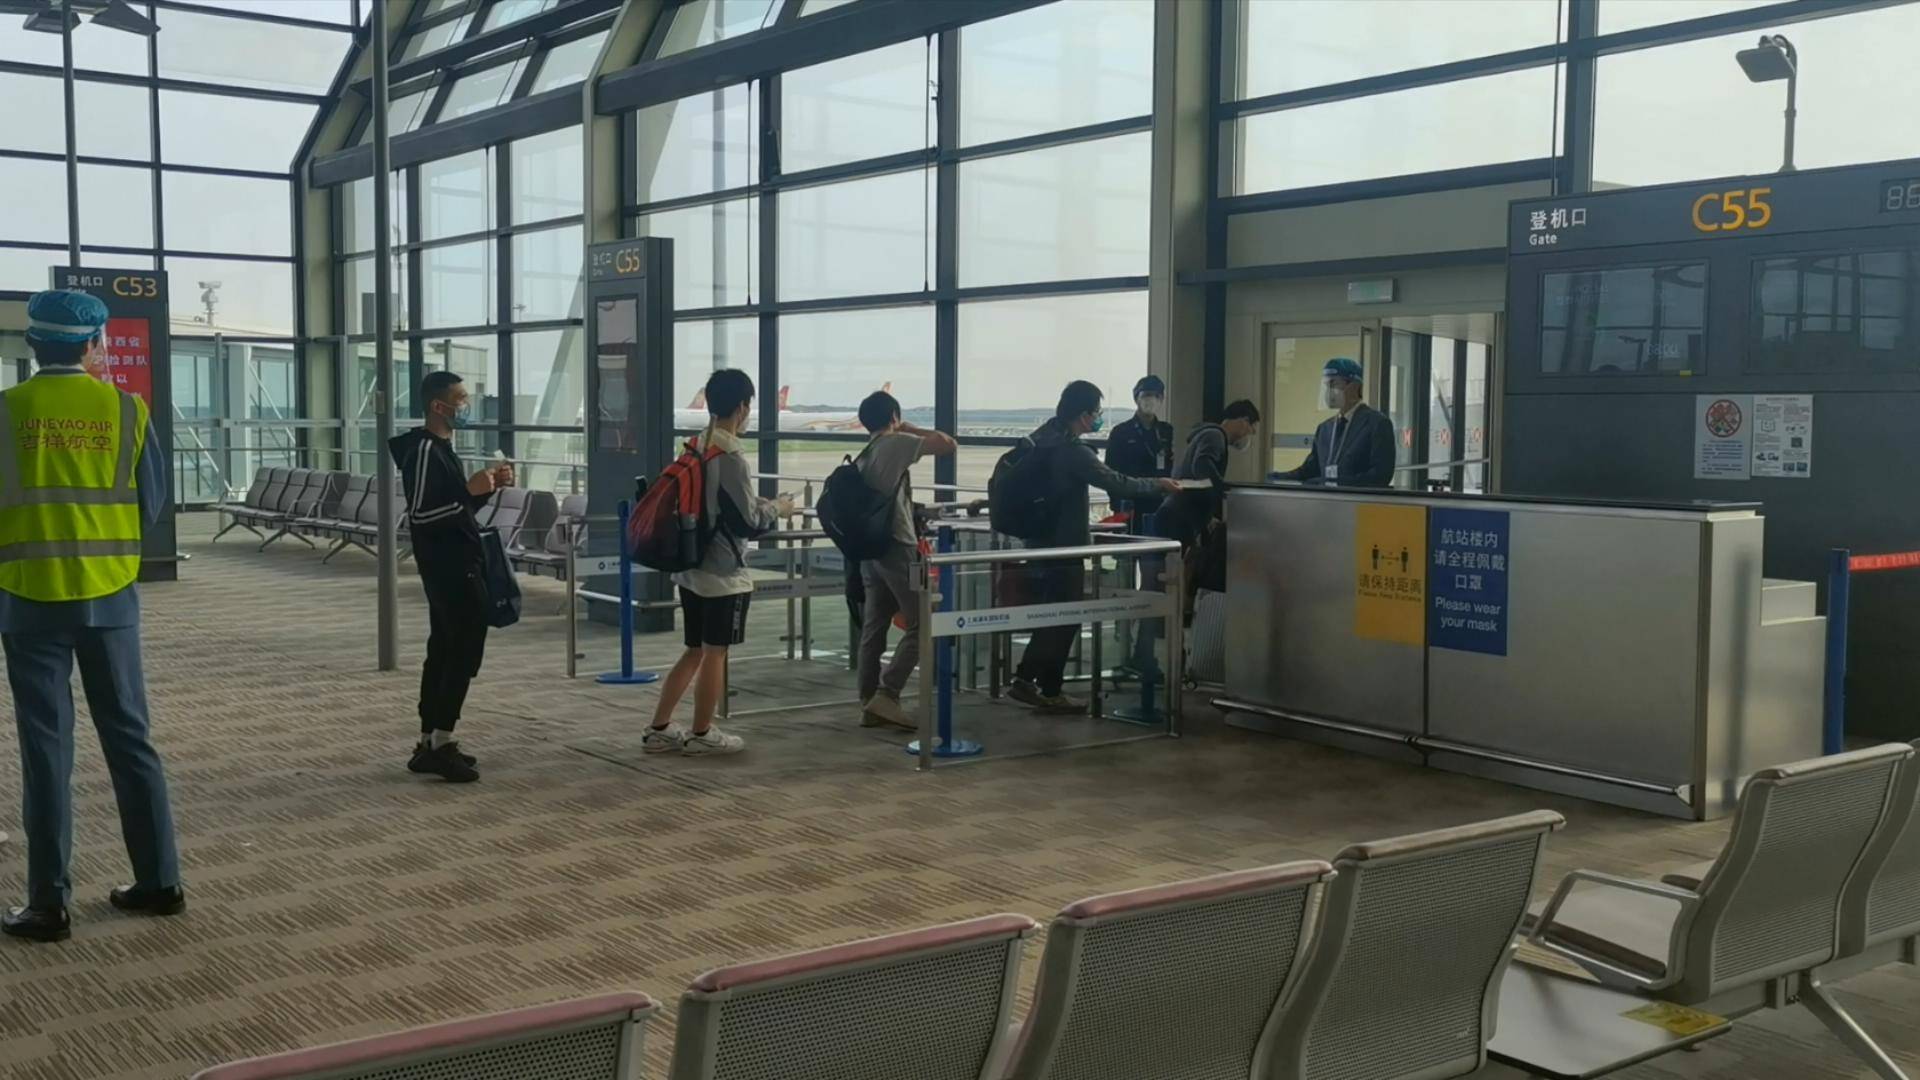 吉祥航空HO1145从浦东机场起飞 今起少量上海始发航班开始恢复